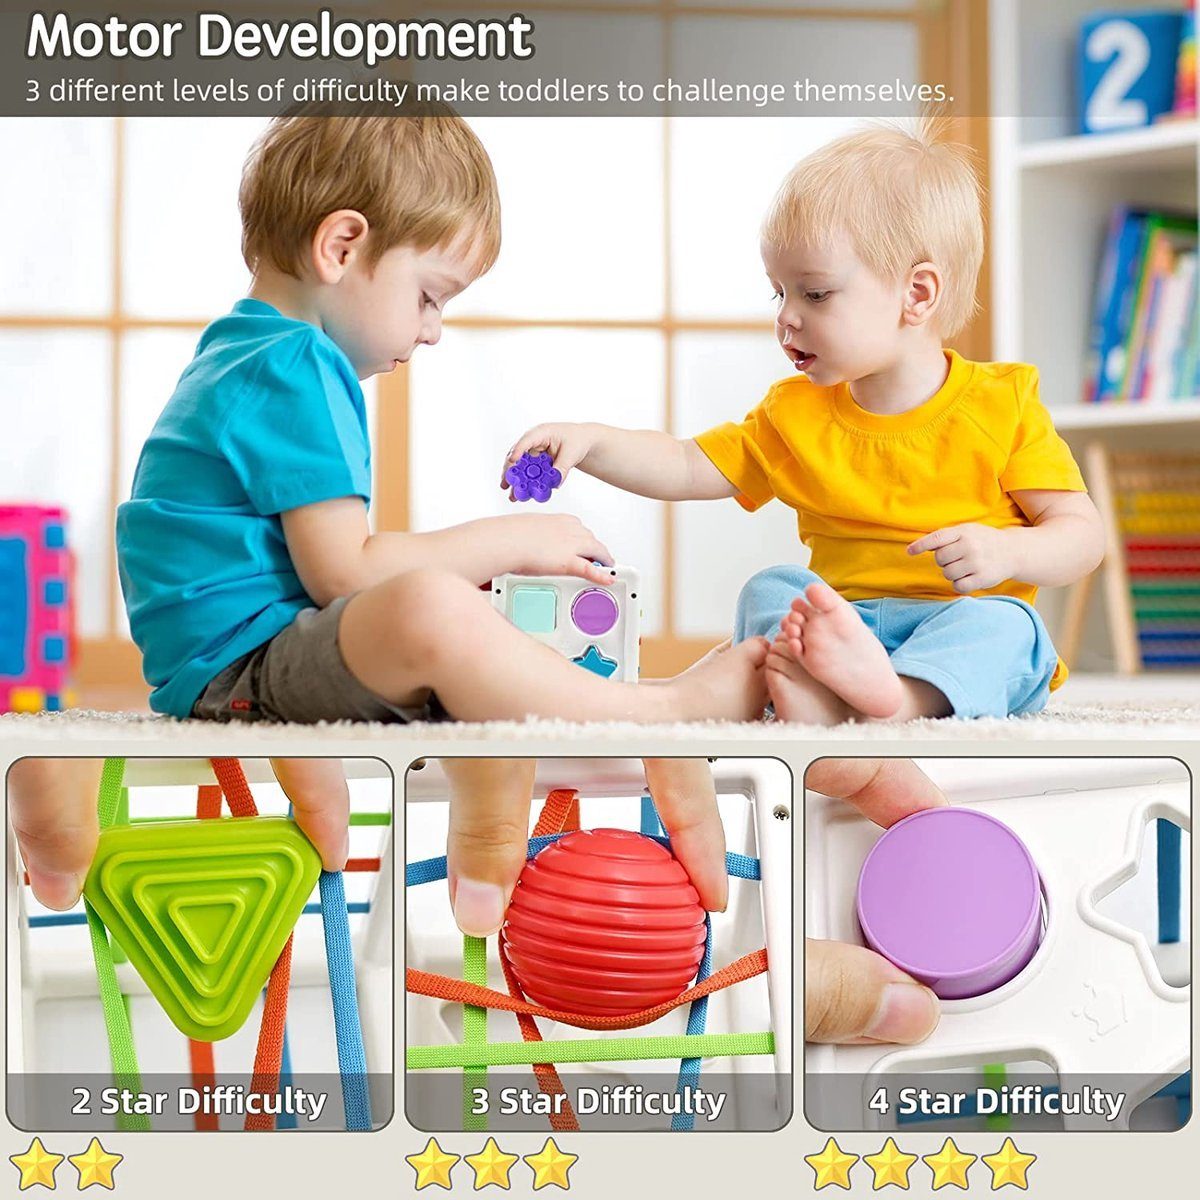 1-3 Monate Montessori Spielzeug Motorikspielzeug Spielzeug Jahre Stapelturm- Puzzlespiel 6-12 Steckspielzeug Babyspielzeug, Baby BOTC Baby,